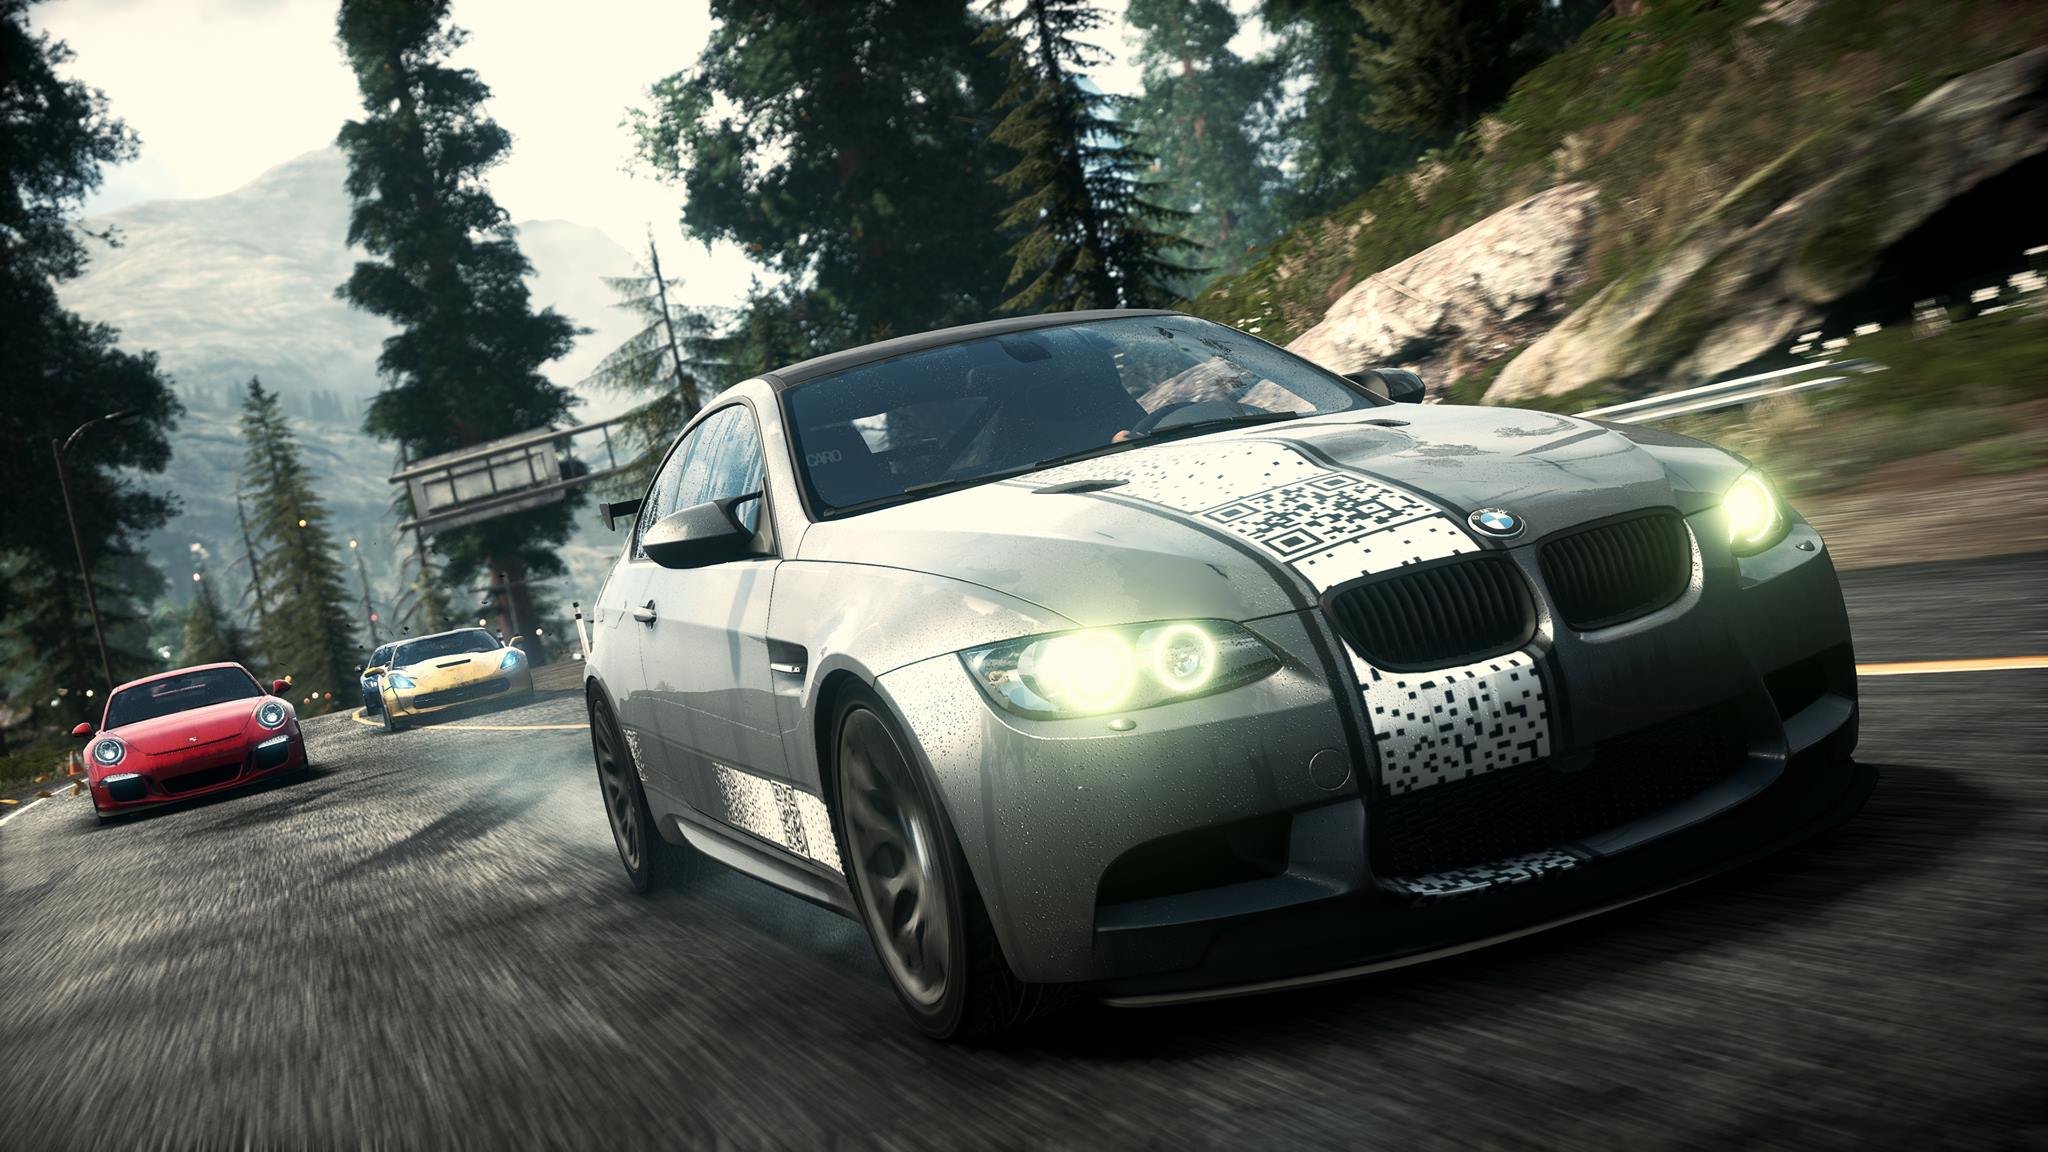 Игры гонки нид фор спид. Need for Speed Rivals Xbox 360. Need for Speed Rivals BMW m3 GTR. Игра NFS Rivals. Need for Speed Rivals 2013.